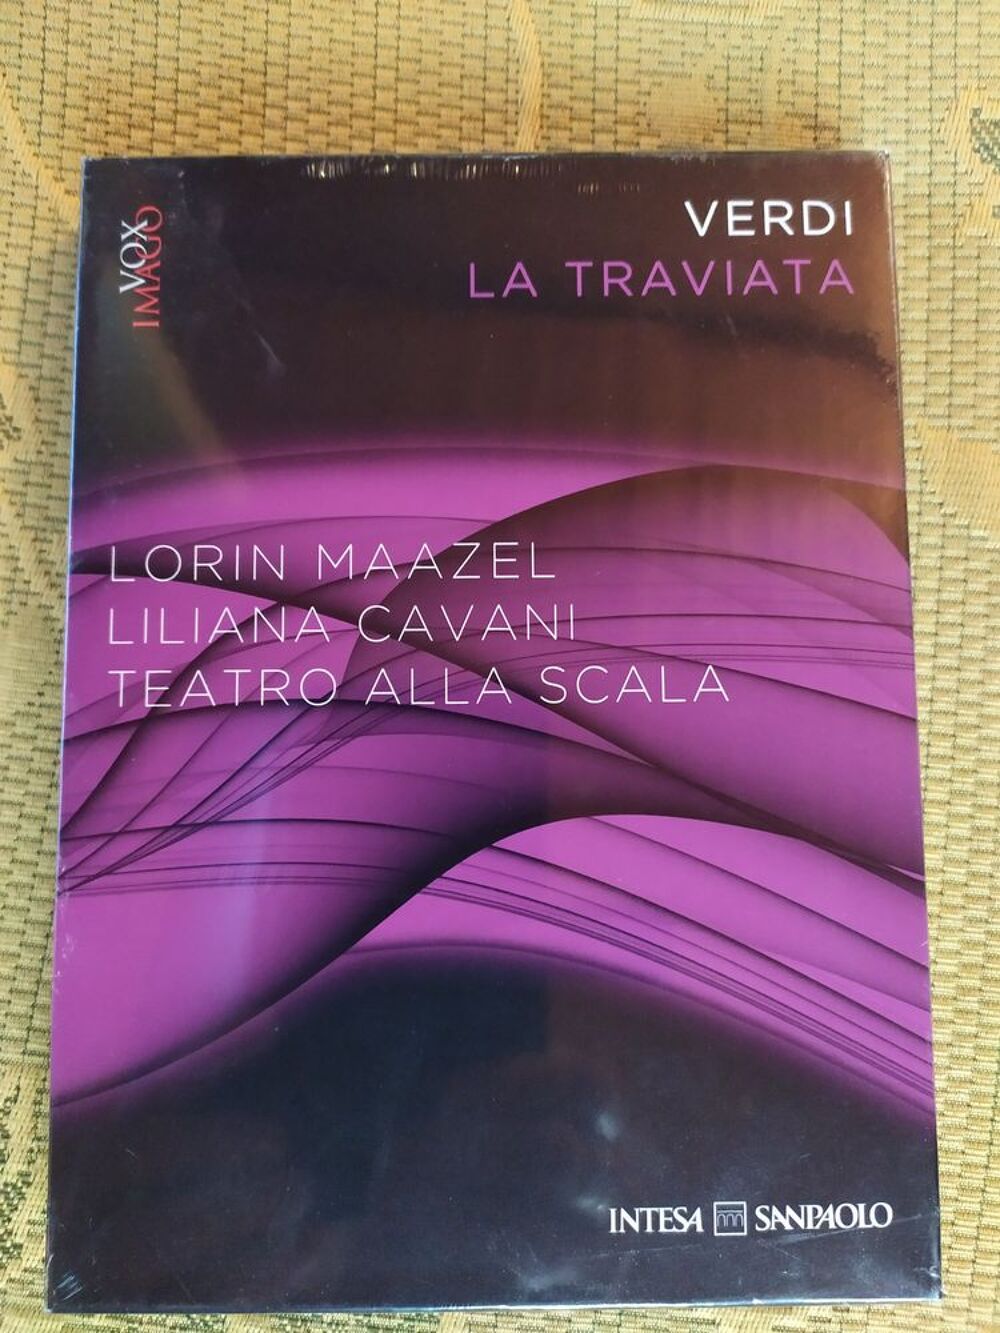 DVD La Traviata de Verdi DVD et blu-ray